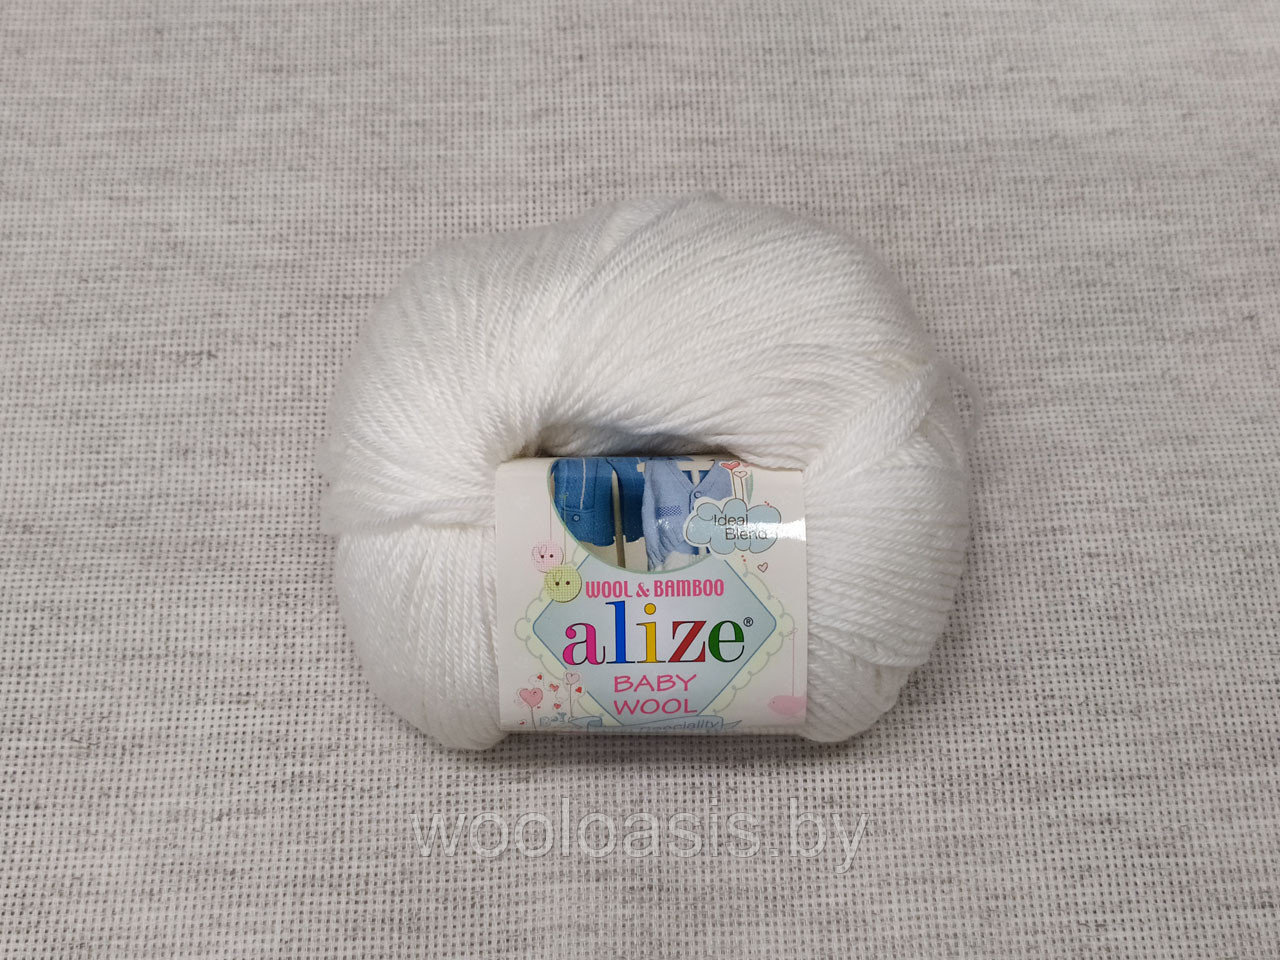 Пряжа Alize Baby Wool, Ализе Беби Вул, турецкая, шерсть, акрил, бамбук, для ручного вязания (цвет 55)